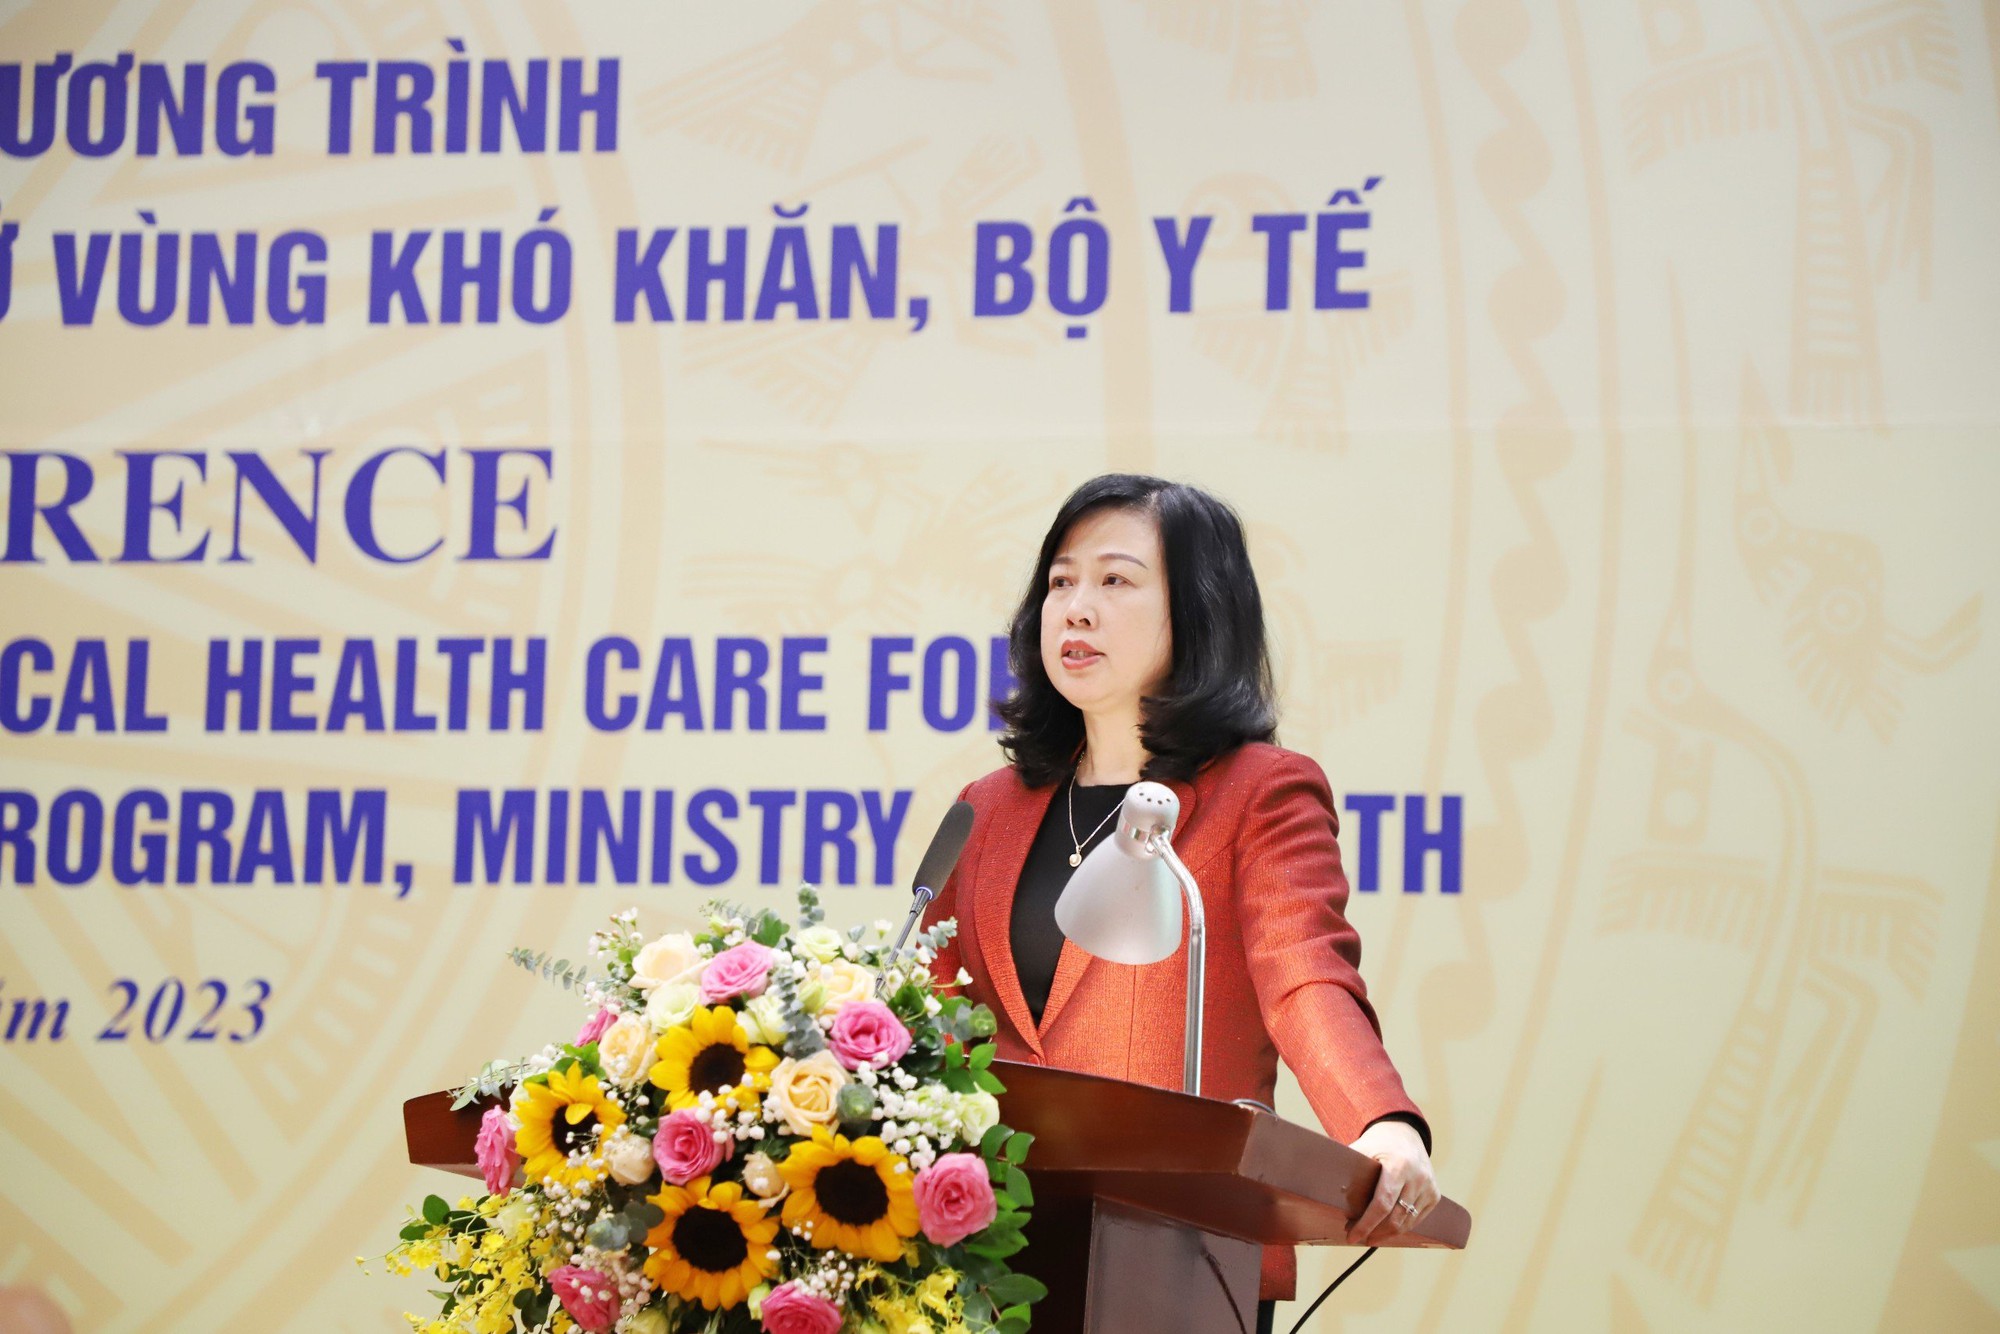 Bộ trưởng Bộ Y tế: Thêm nguồn lực để y tế cơ sở làm tốt hơn công tác chăm sóc sức khoẻ ban đầu- Ảnh 1.